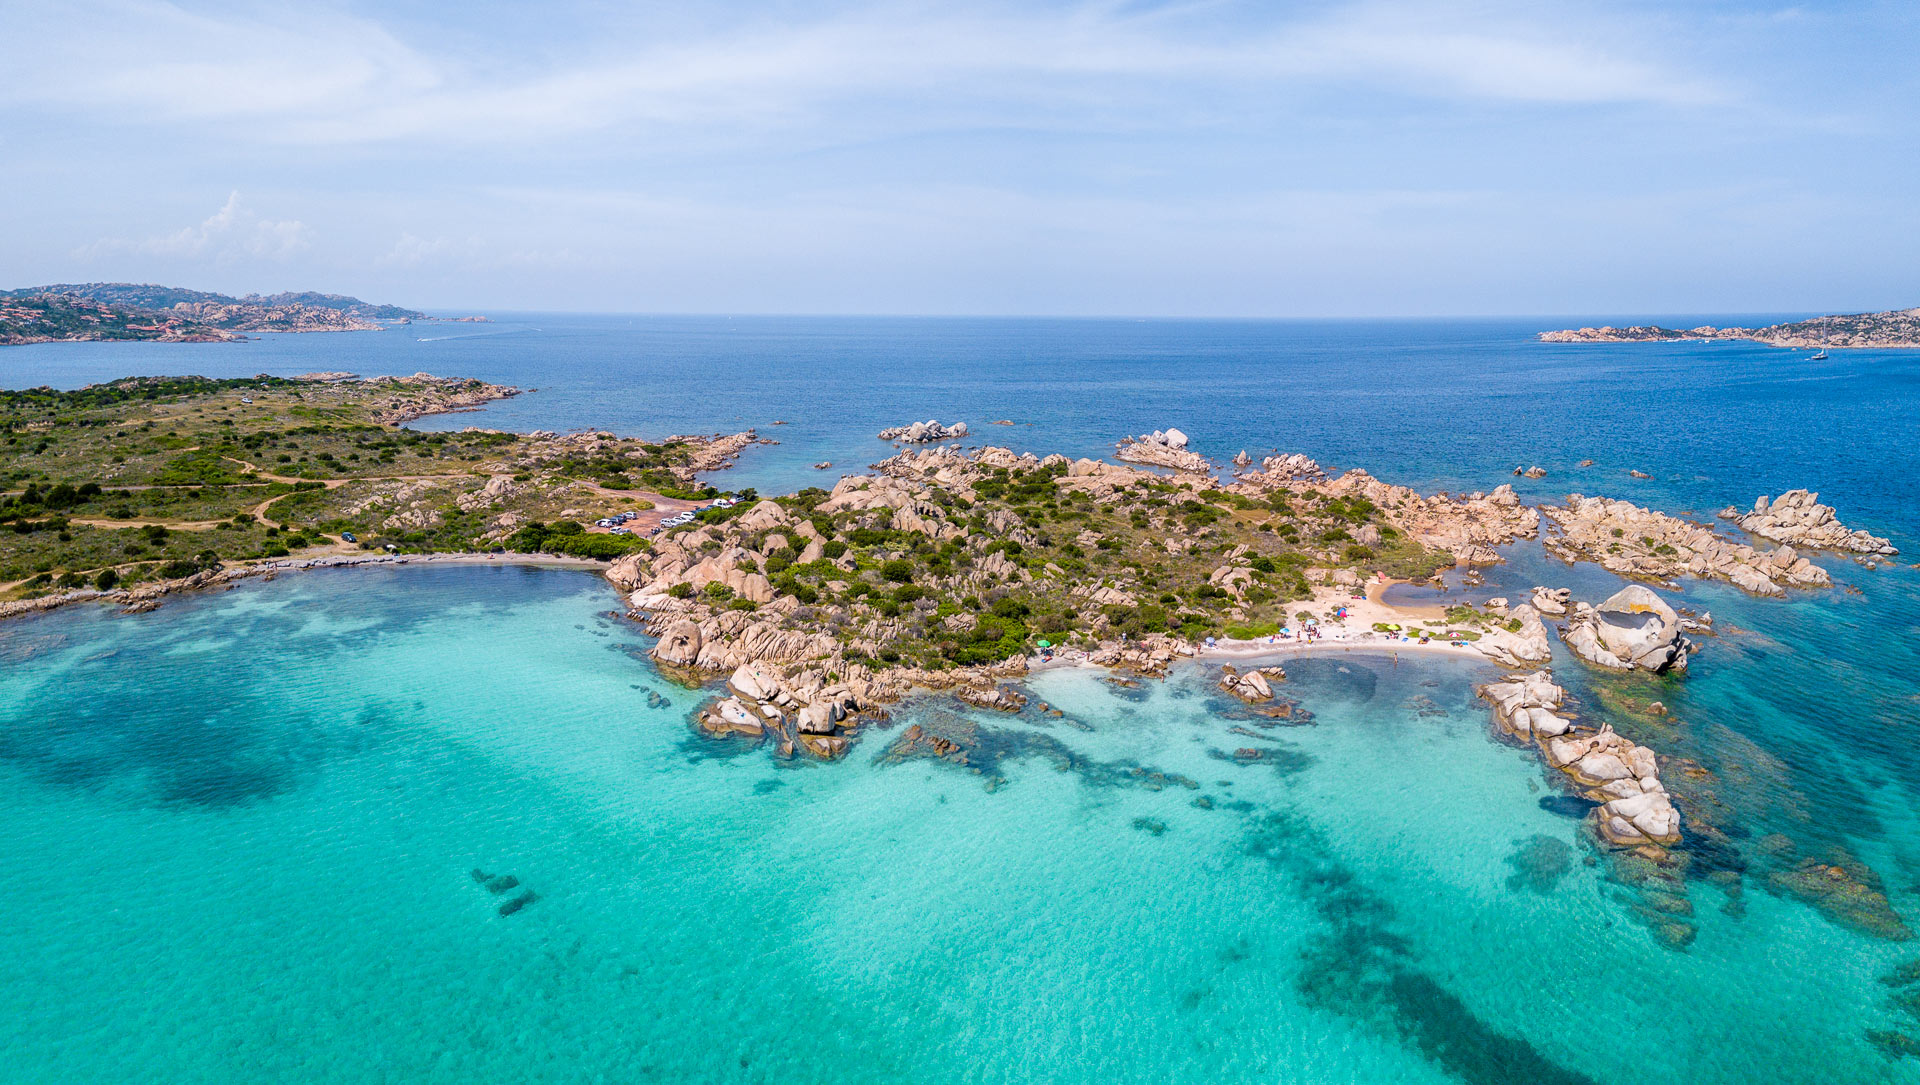 Costa Smeralda itinerary, Sardinia